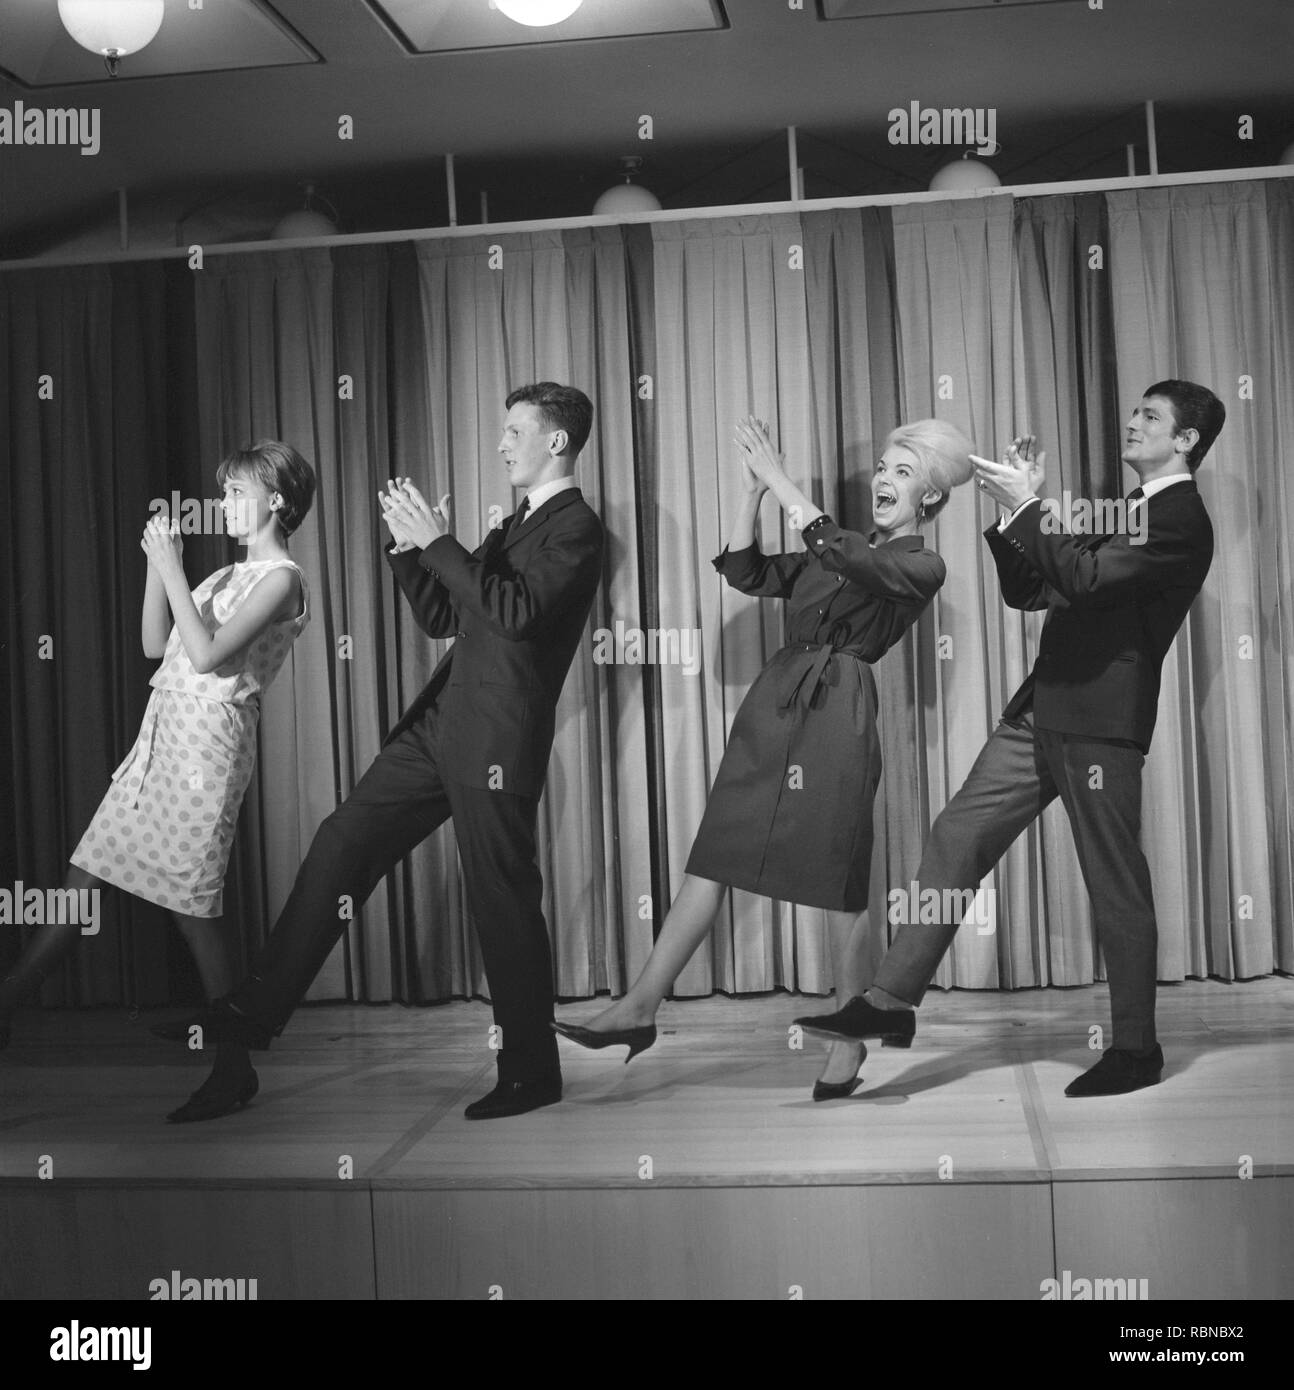 Danser dans les années 60. Le Hully Gully est danse rendue populaire et ici sont des hommes et des femmes dansant le nouvel engouement. Hully Gully est un type de danse en ligne non structurées et consistait en une série d'étapes et était relativement simple et facile à exécuter. Hully Gully peut être vu effectué par l'acteur John Belushi dans le film Blues Brothers. Remarquez la ruche typique sur la tête blonde. Banque D'Images